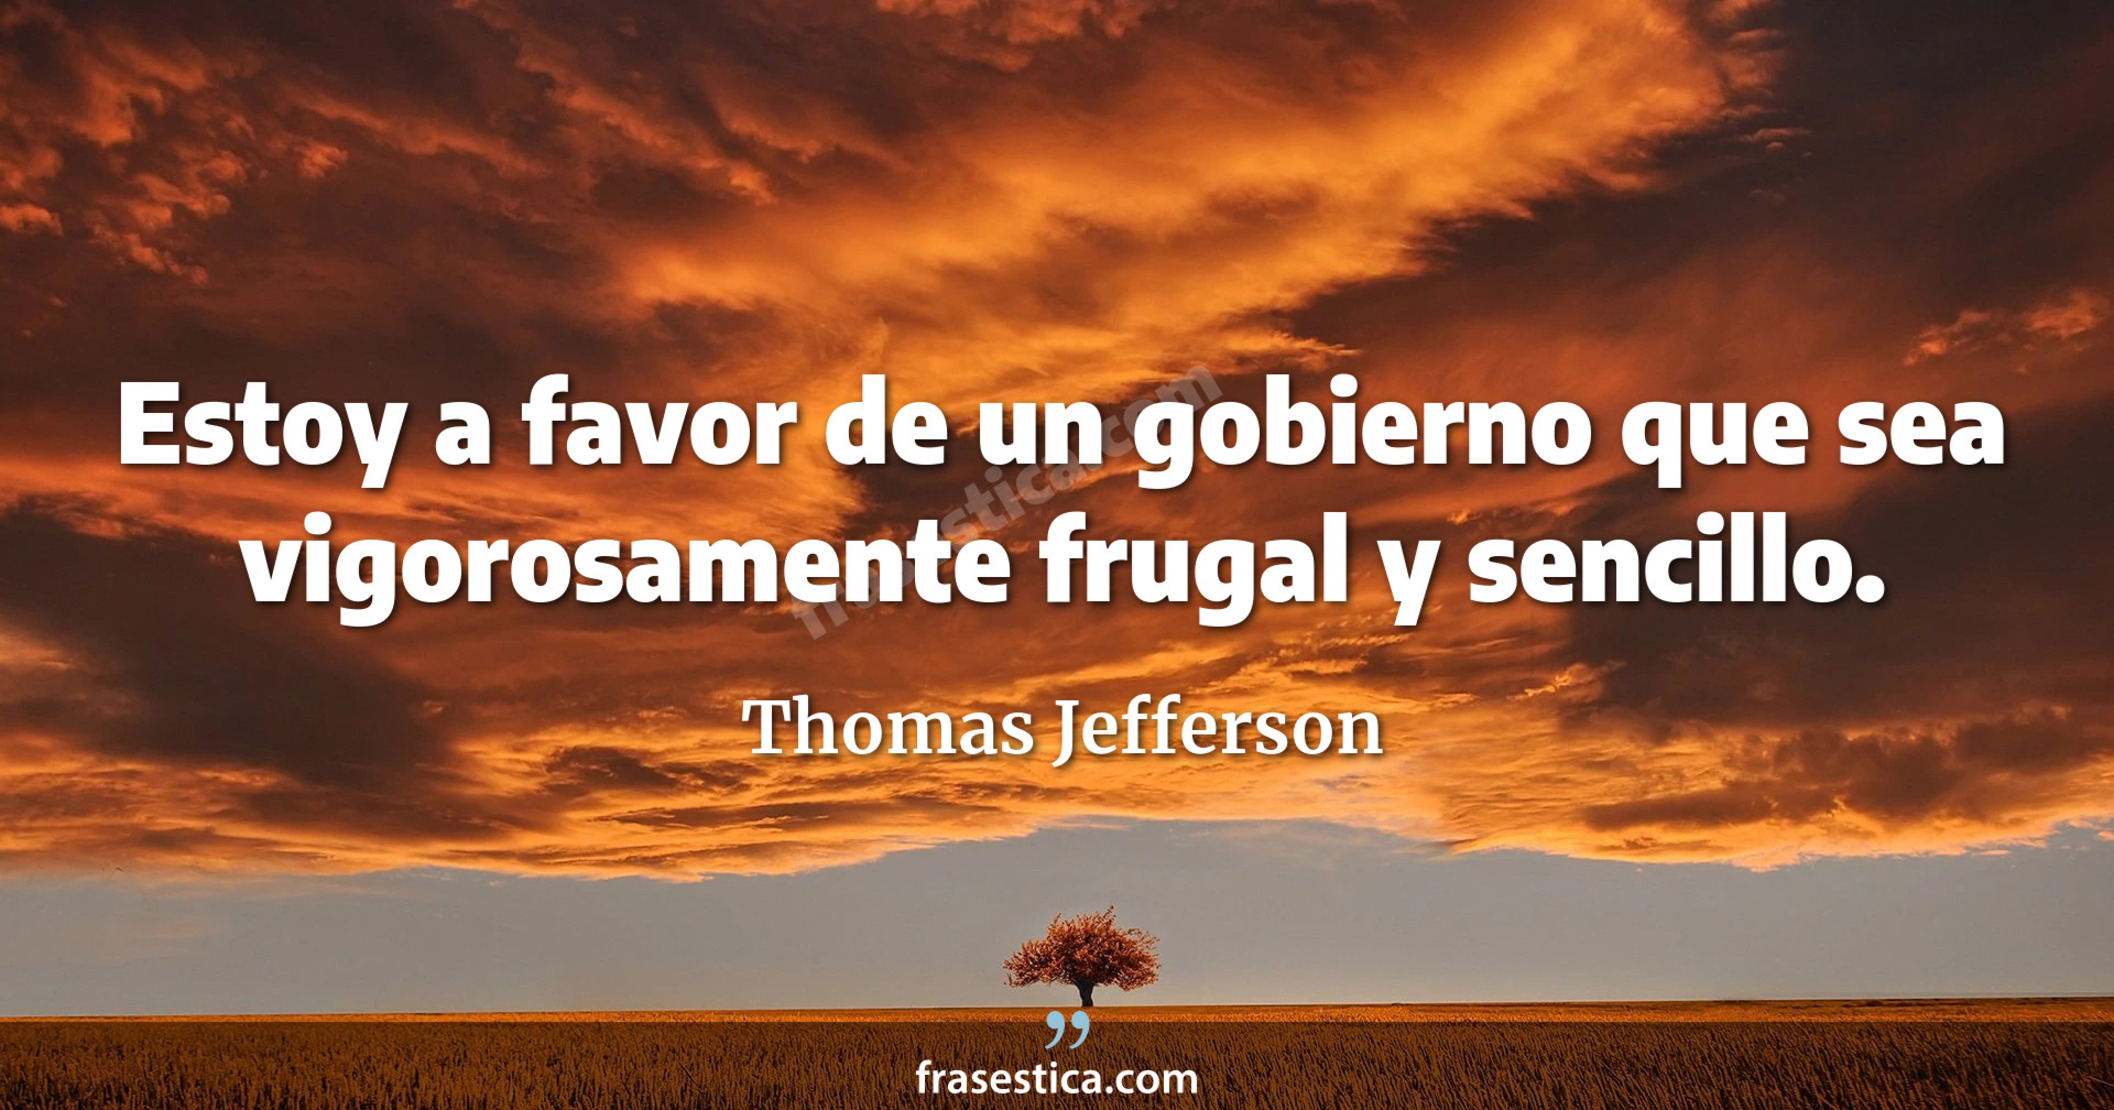 Estoy a favor de un gobierno que sea vigorosamente frugal y sencillo. - Thomas Jefferson